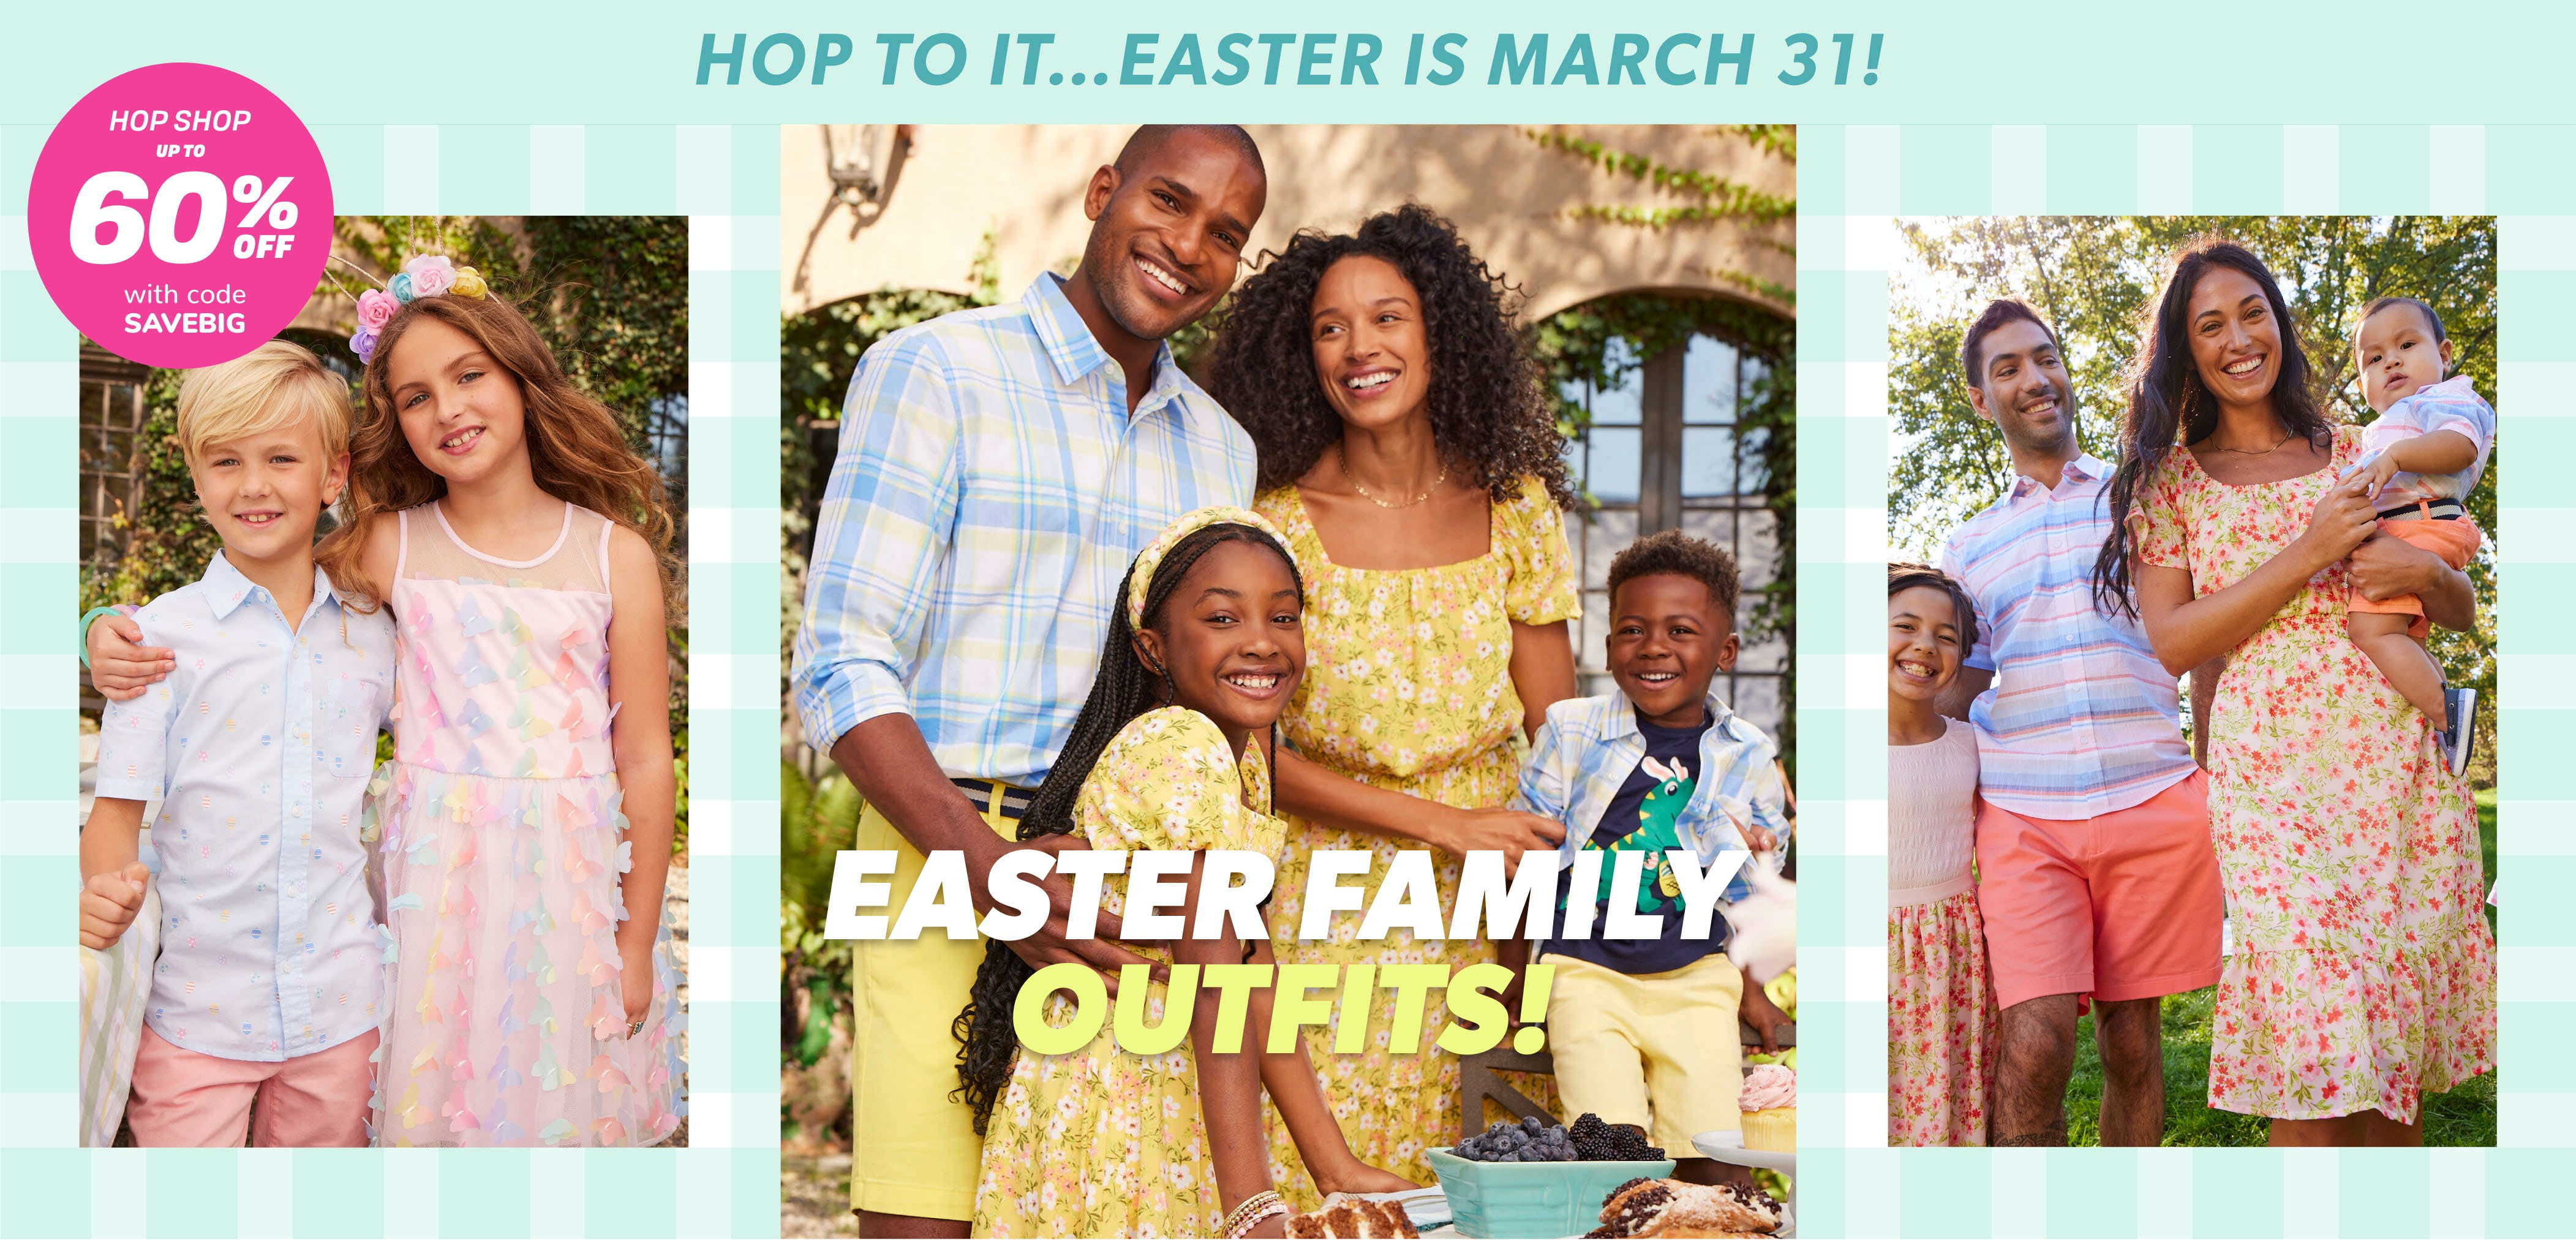 Salta a ello... ¡La Pascua es el 31 de marzo! ¡TRAJES FAMILIARES DE PASCUA! HOP SHOP hasta 60% de descuento